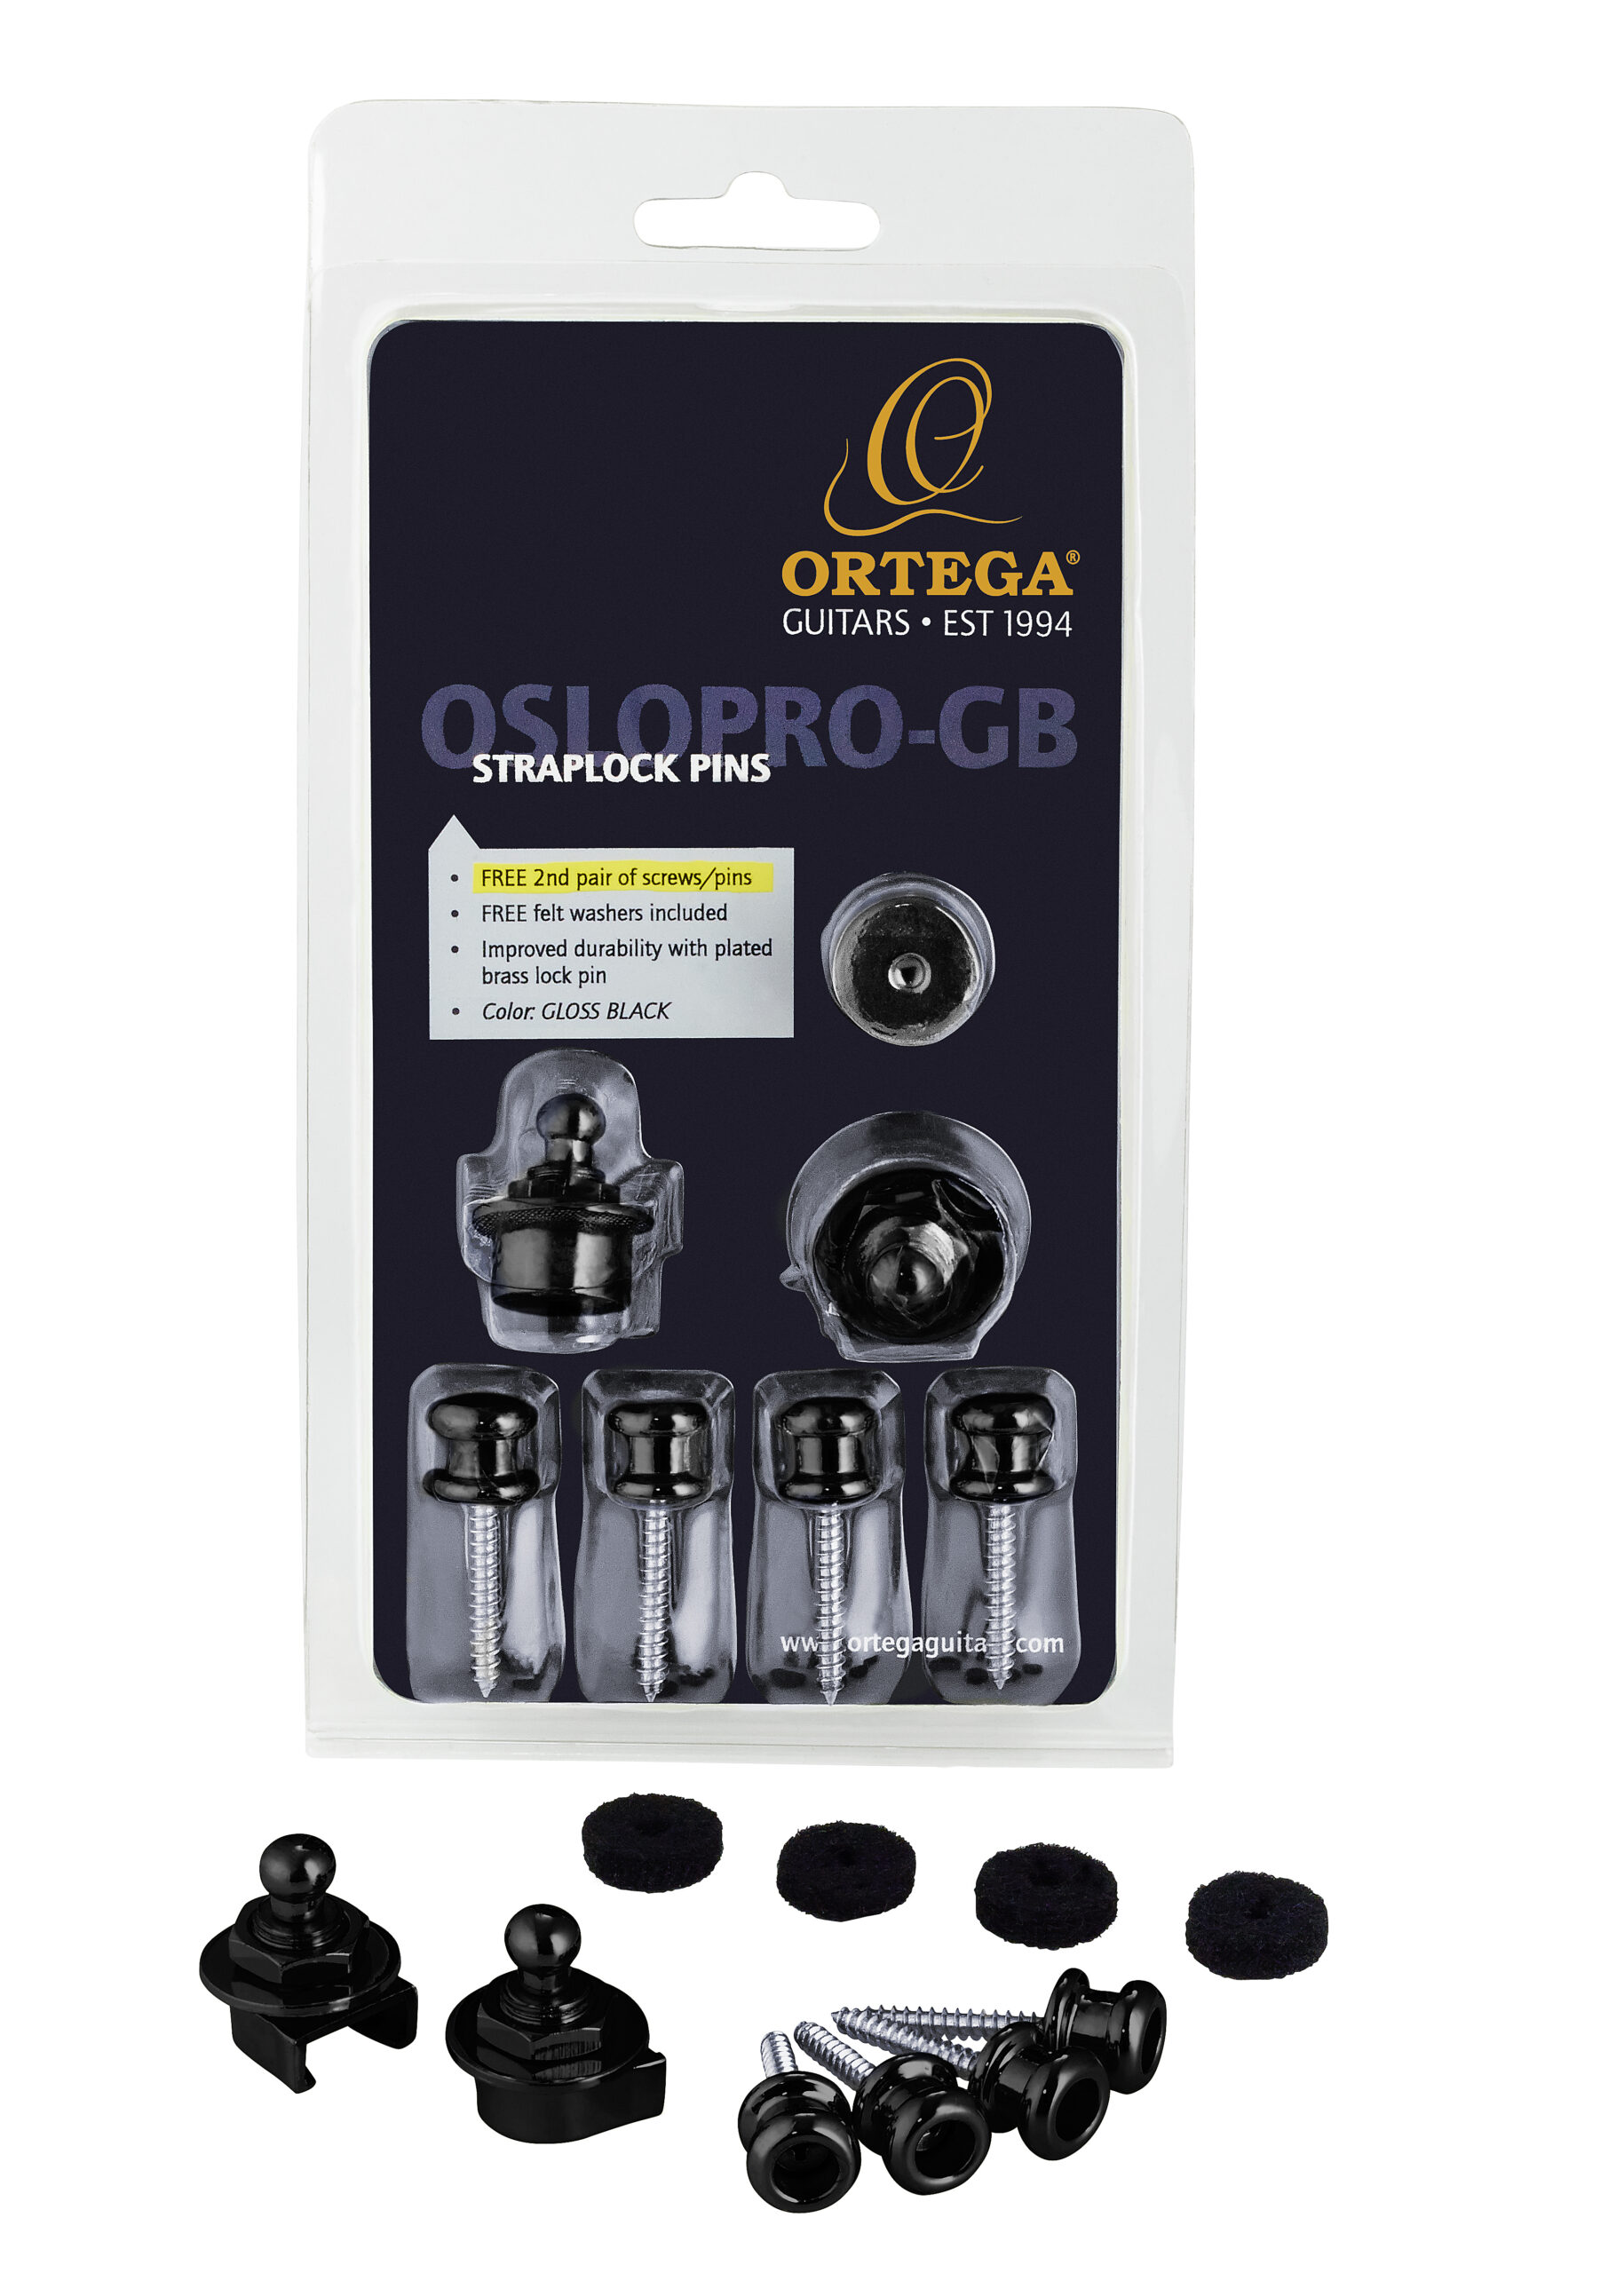 ORTEGA Strap Lock Pin Pro Version gloss black inklusive ein Paar Schrauben und Pins